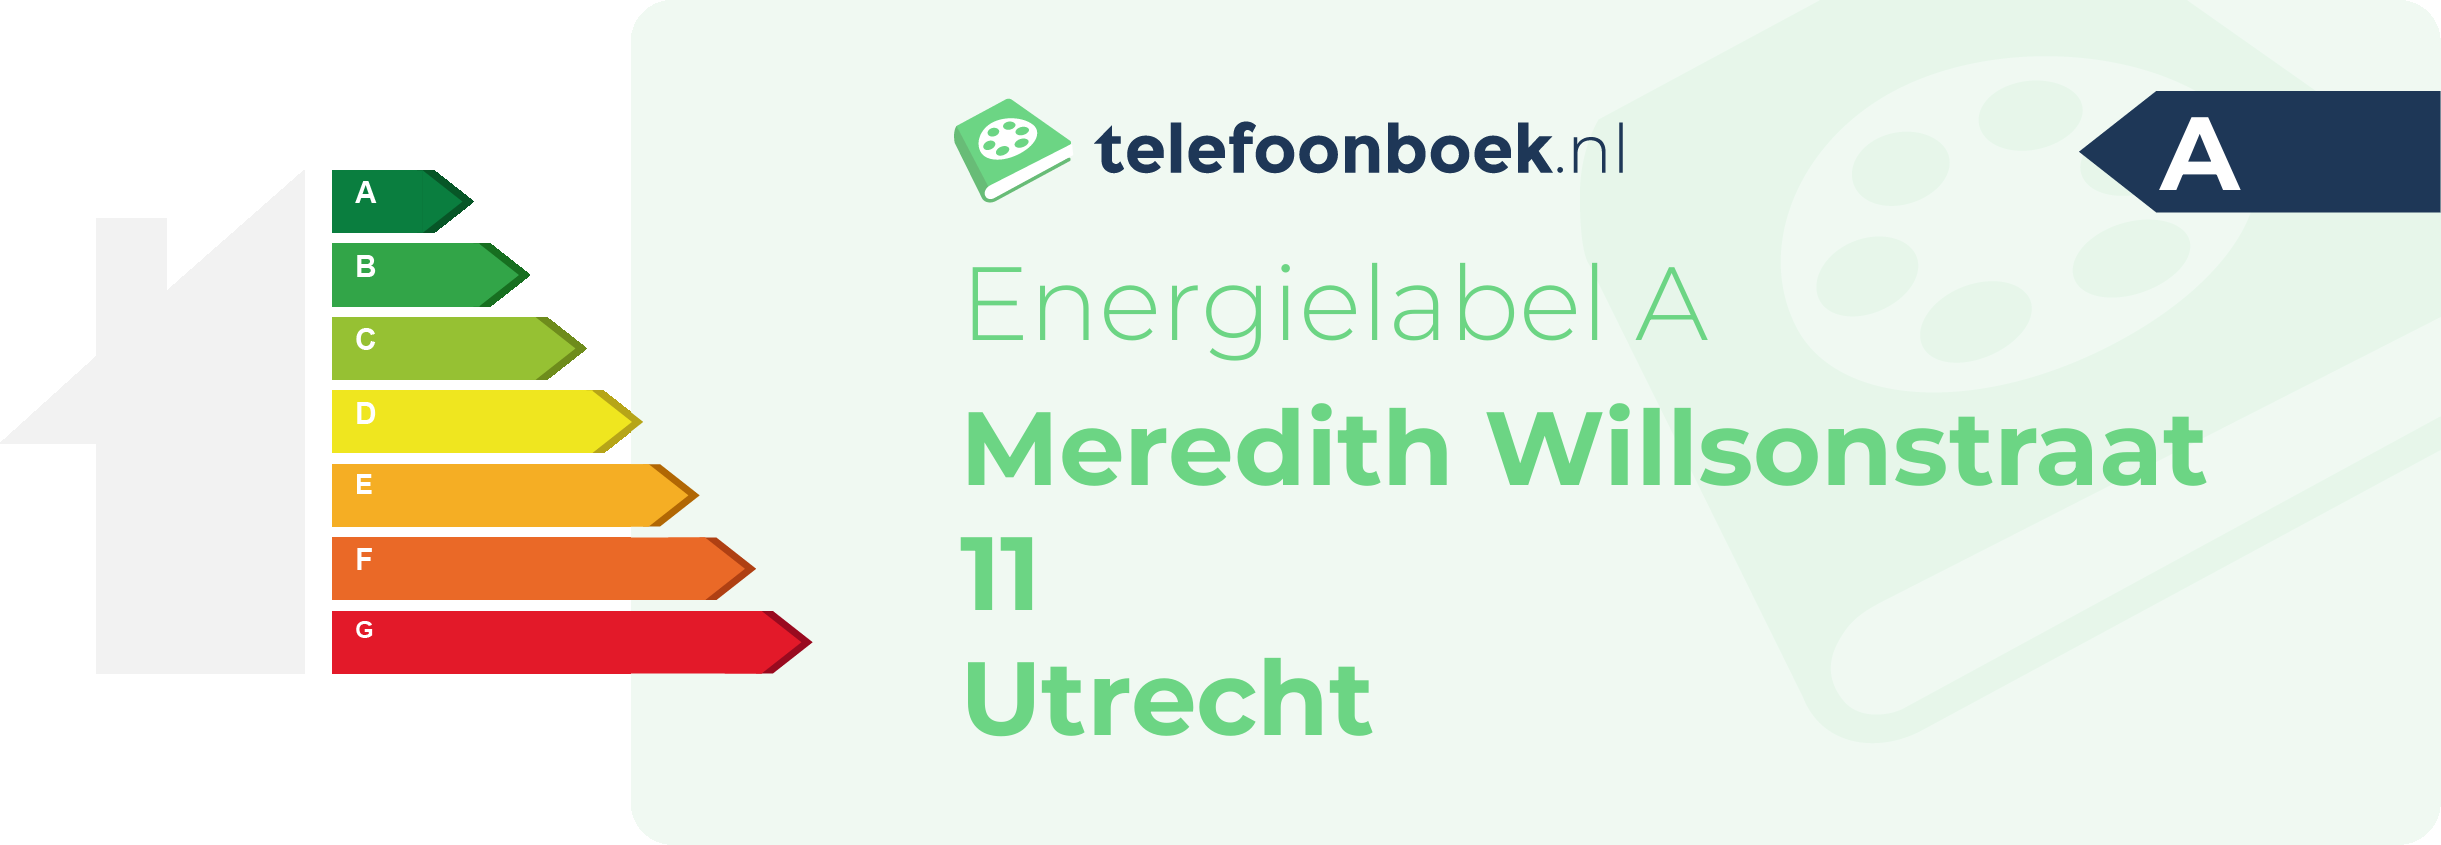 Energielabel Meredith Willsonstraat 11 Utrecht